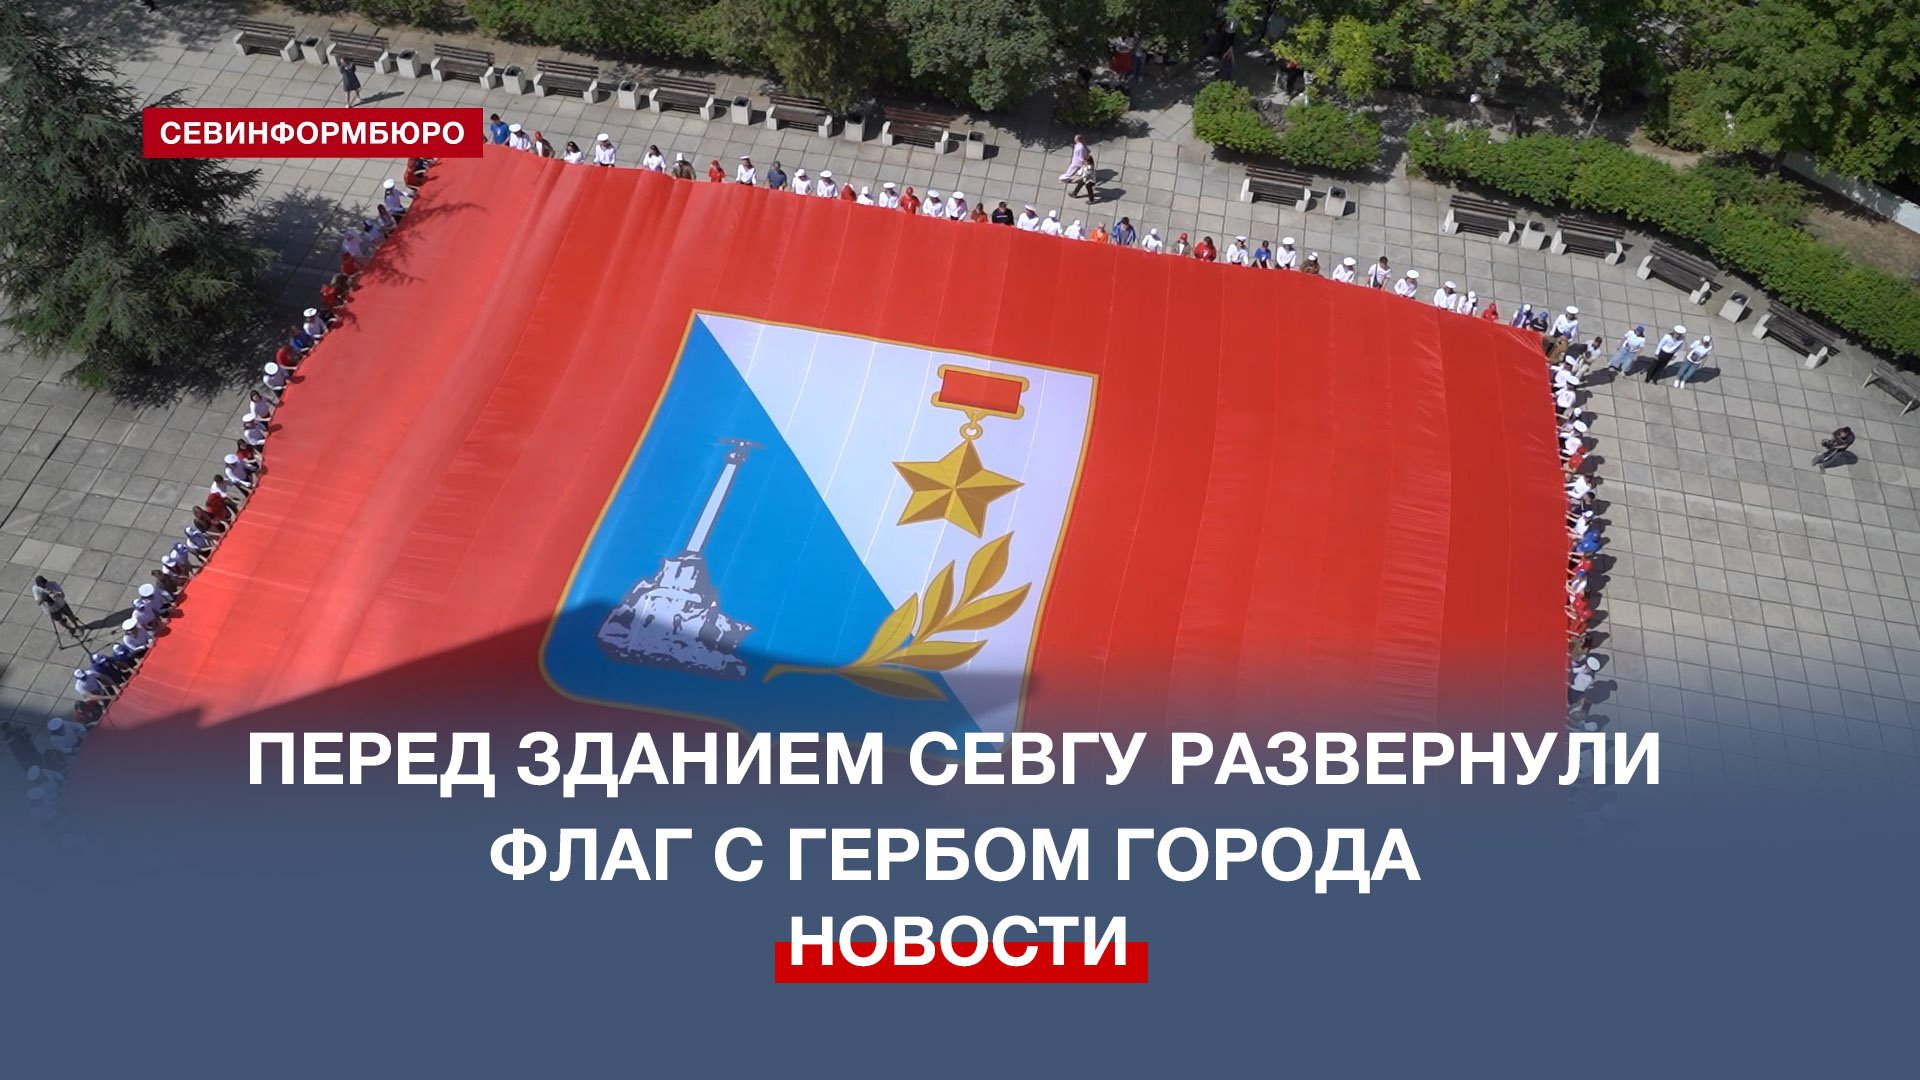 Перед зданием СевГУ развернули флаг с гербом города в честь 241-летия Севастополя